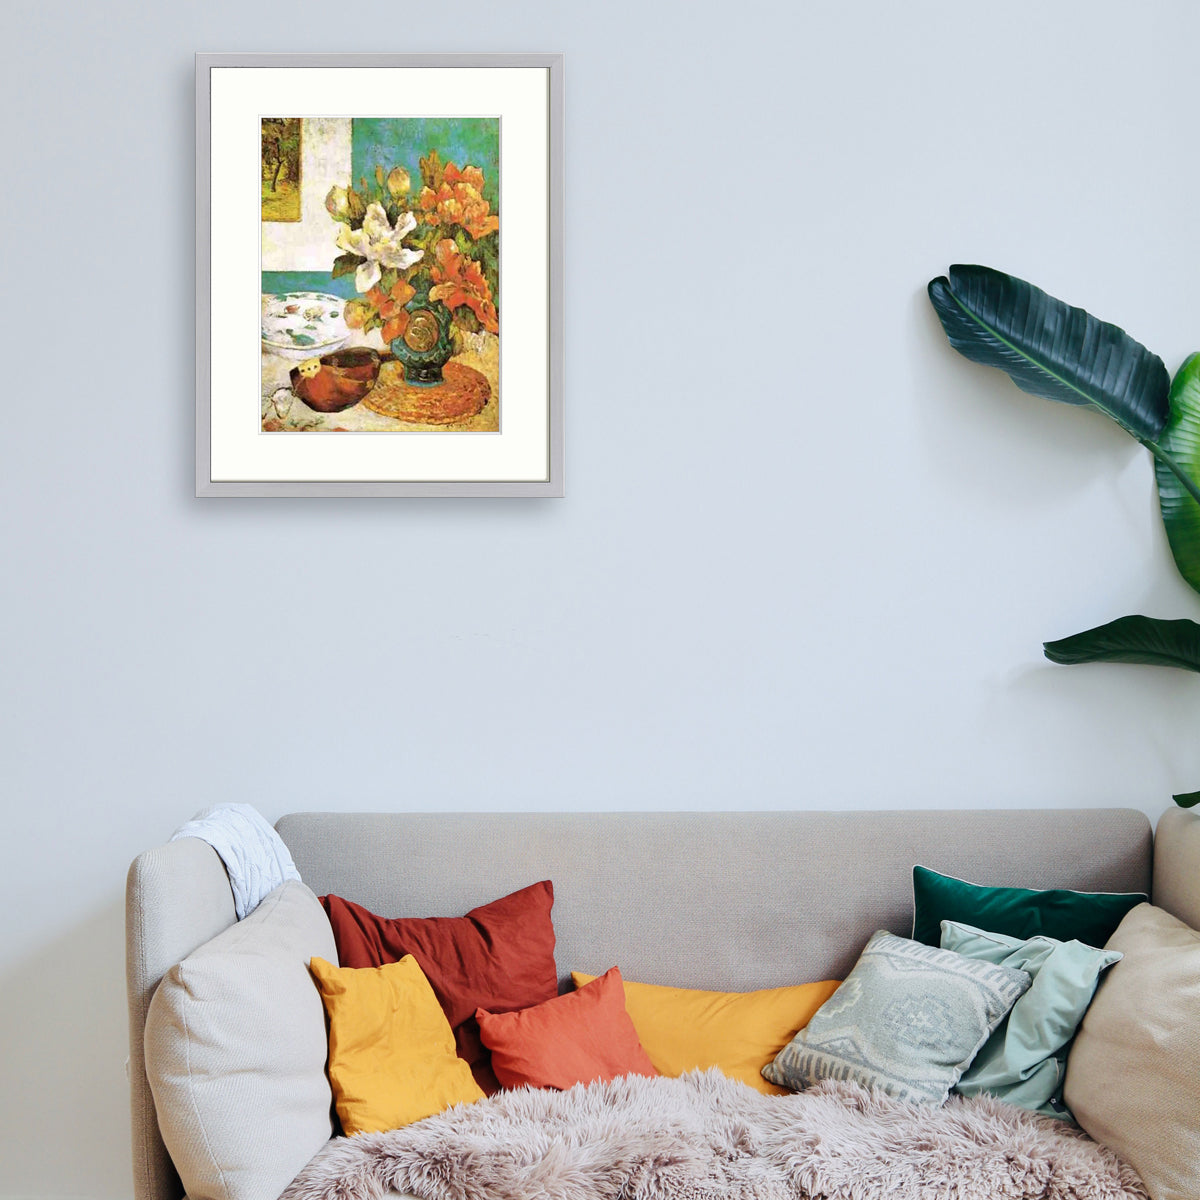 Gauguin - Nature morte à la mandoline Le Cadre Décoration intérieure Tableaux cadre bois affiche poster oeuvre d'art rapport qualité prix pas cher peintre célèbre